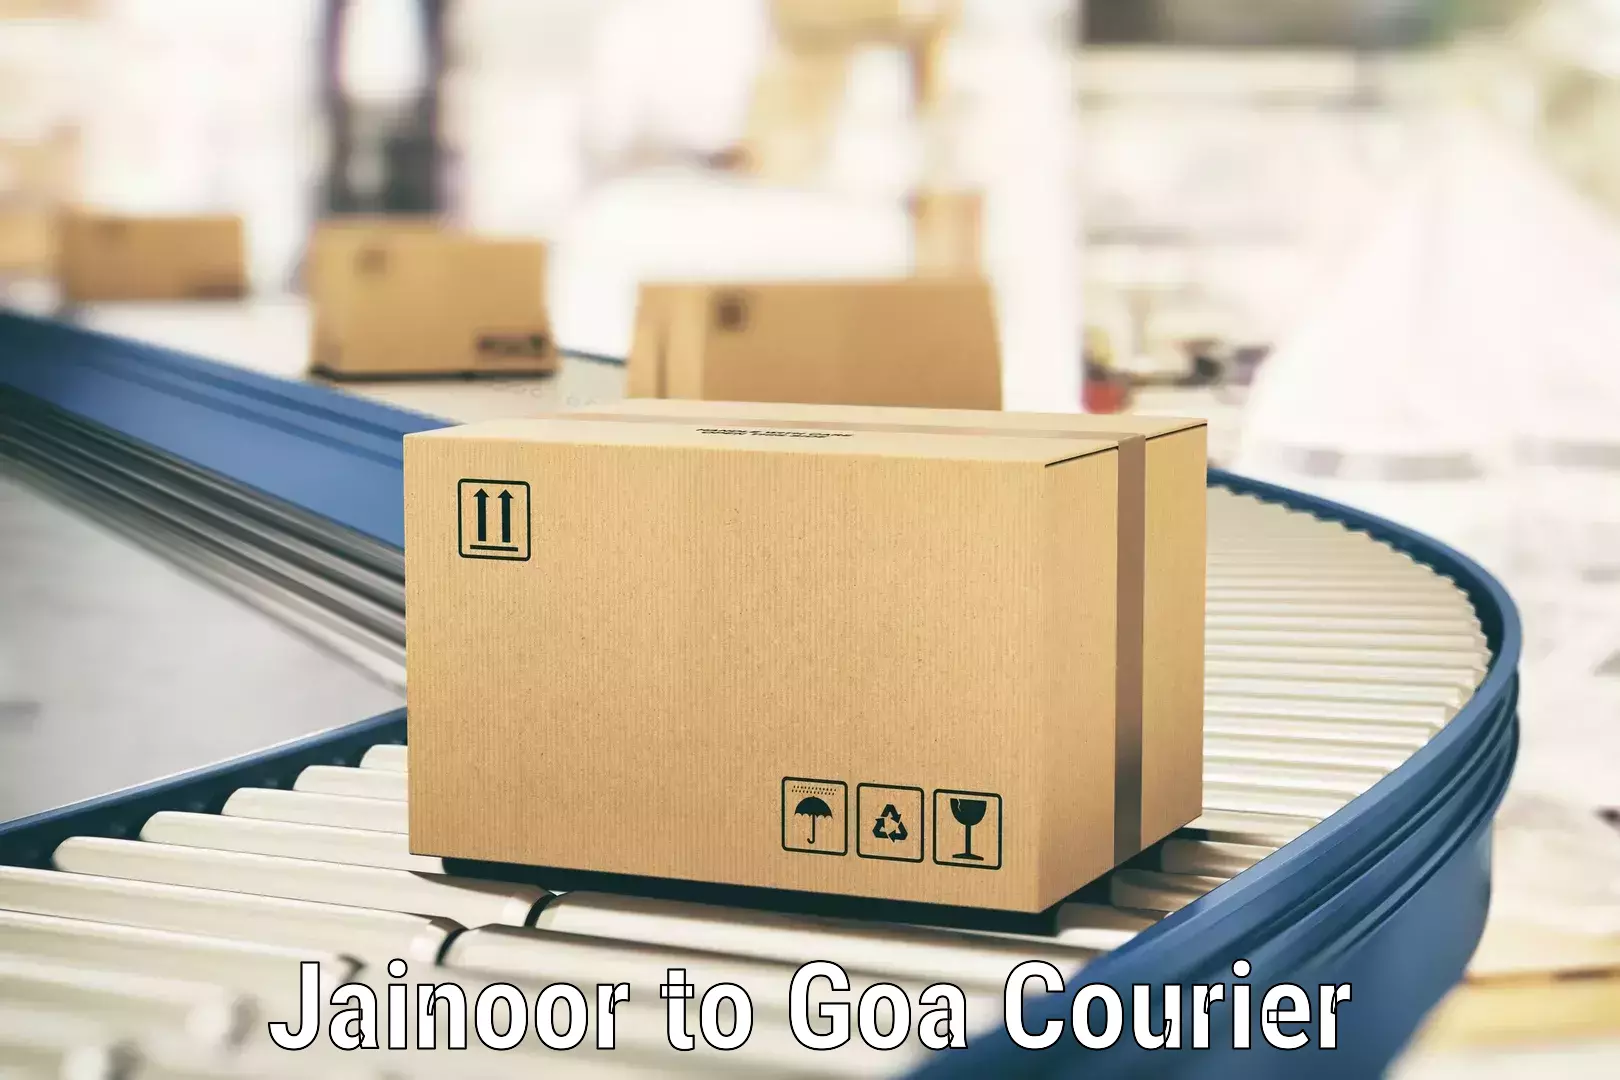 Comprehensive delivery network Jainoor to Margao